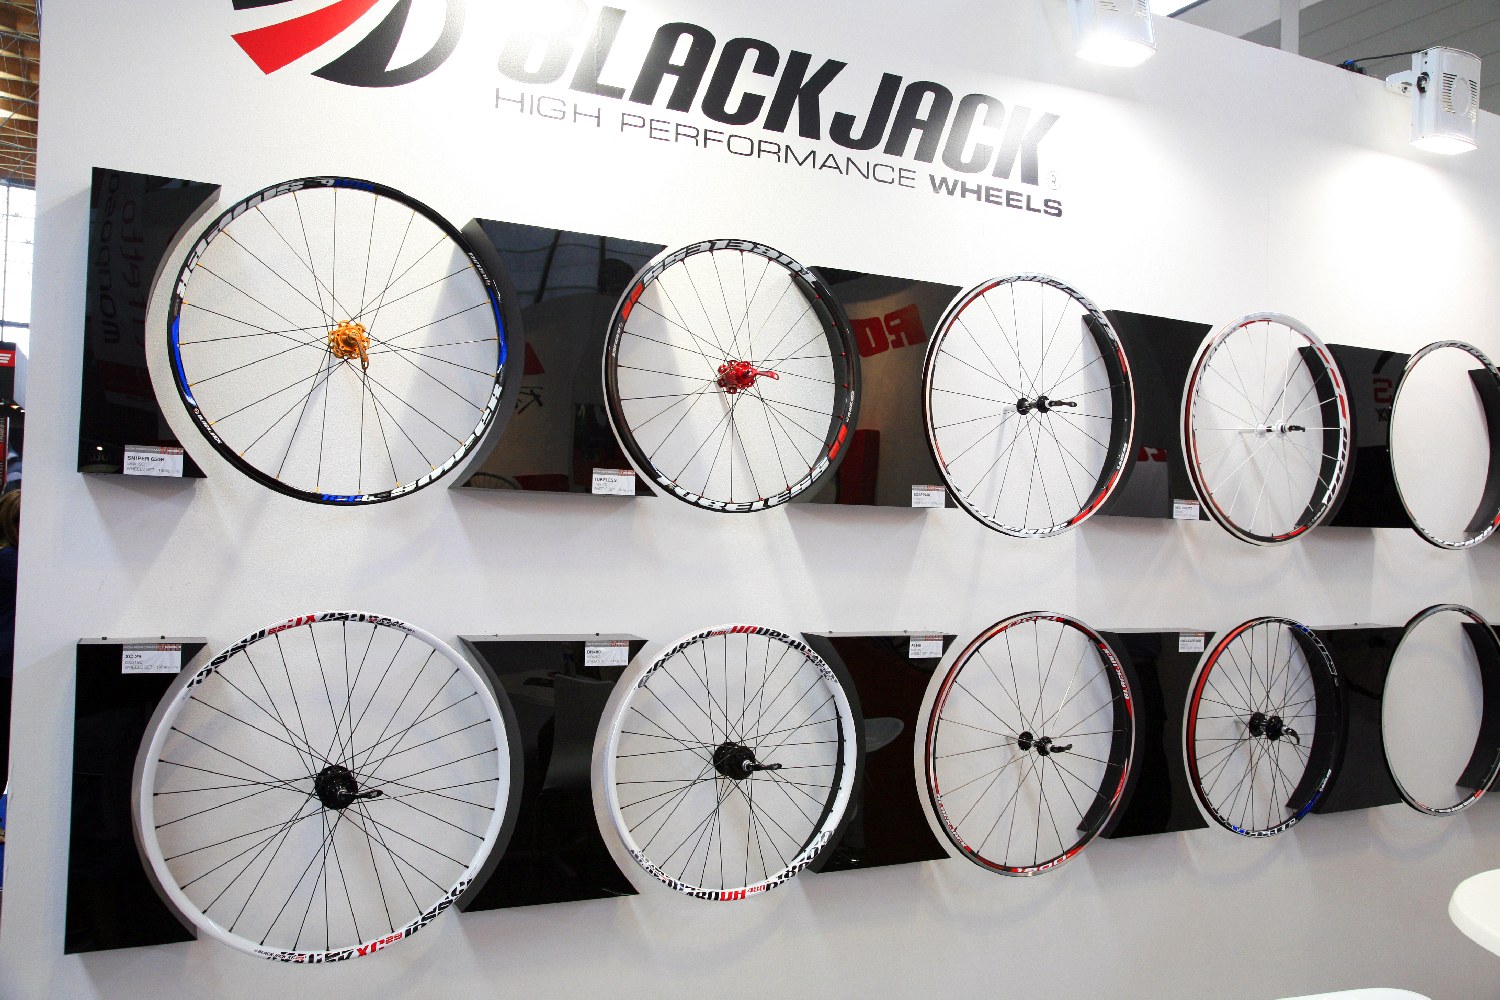 A BlackJack a prémium vonal, mind minőség, mind választék szempontjából egyenrangú a nevesebb gyártók kínálatával...